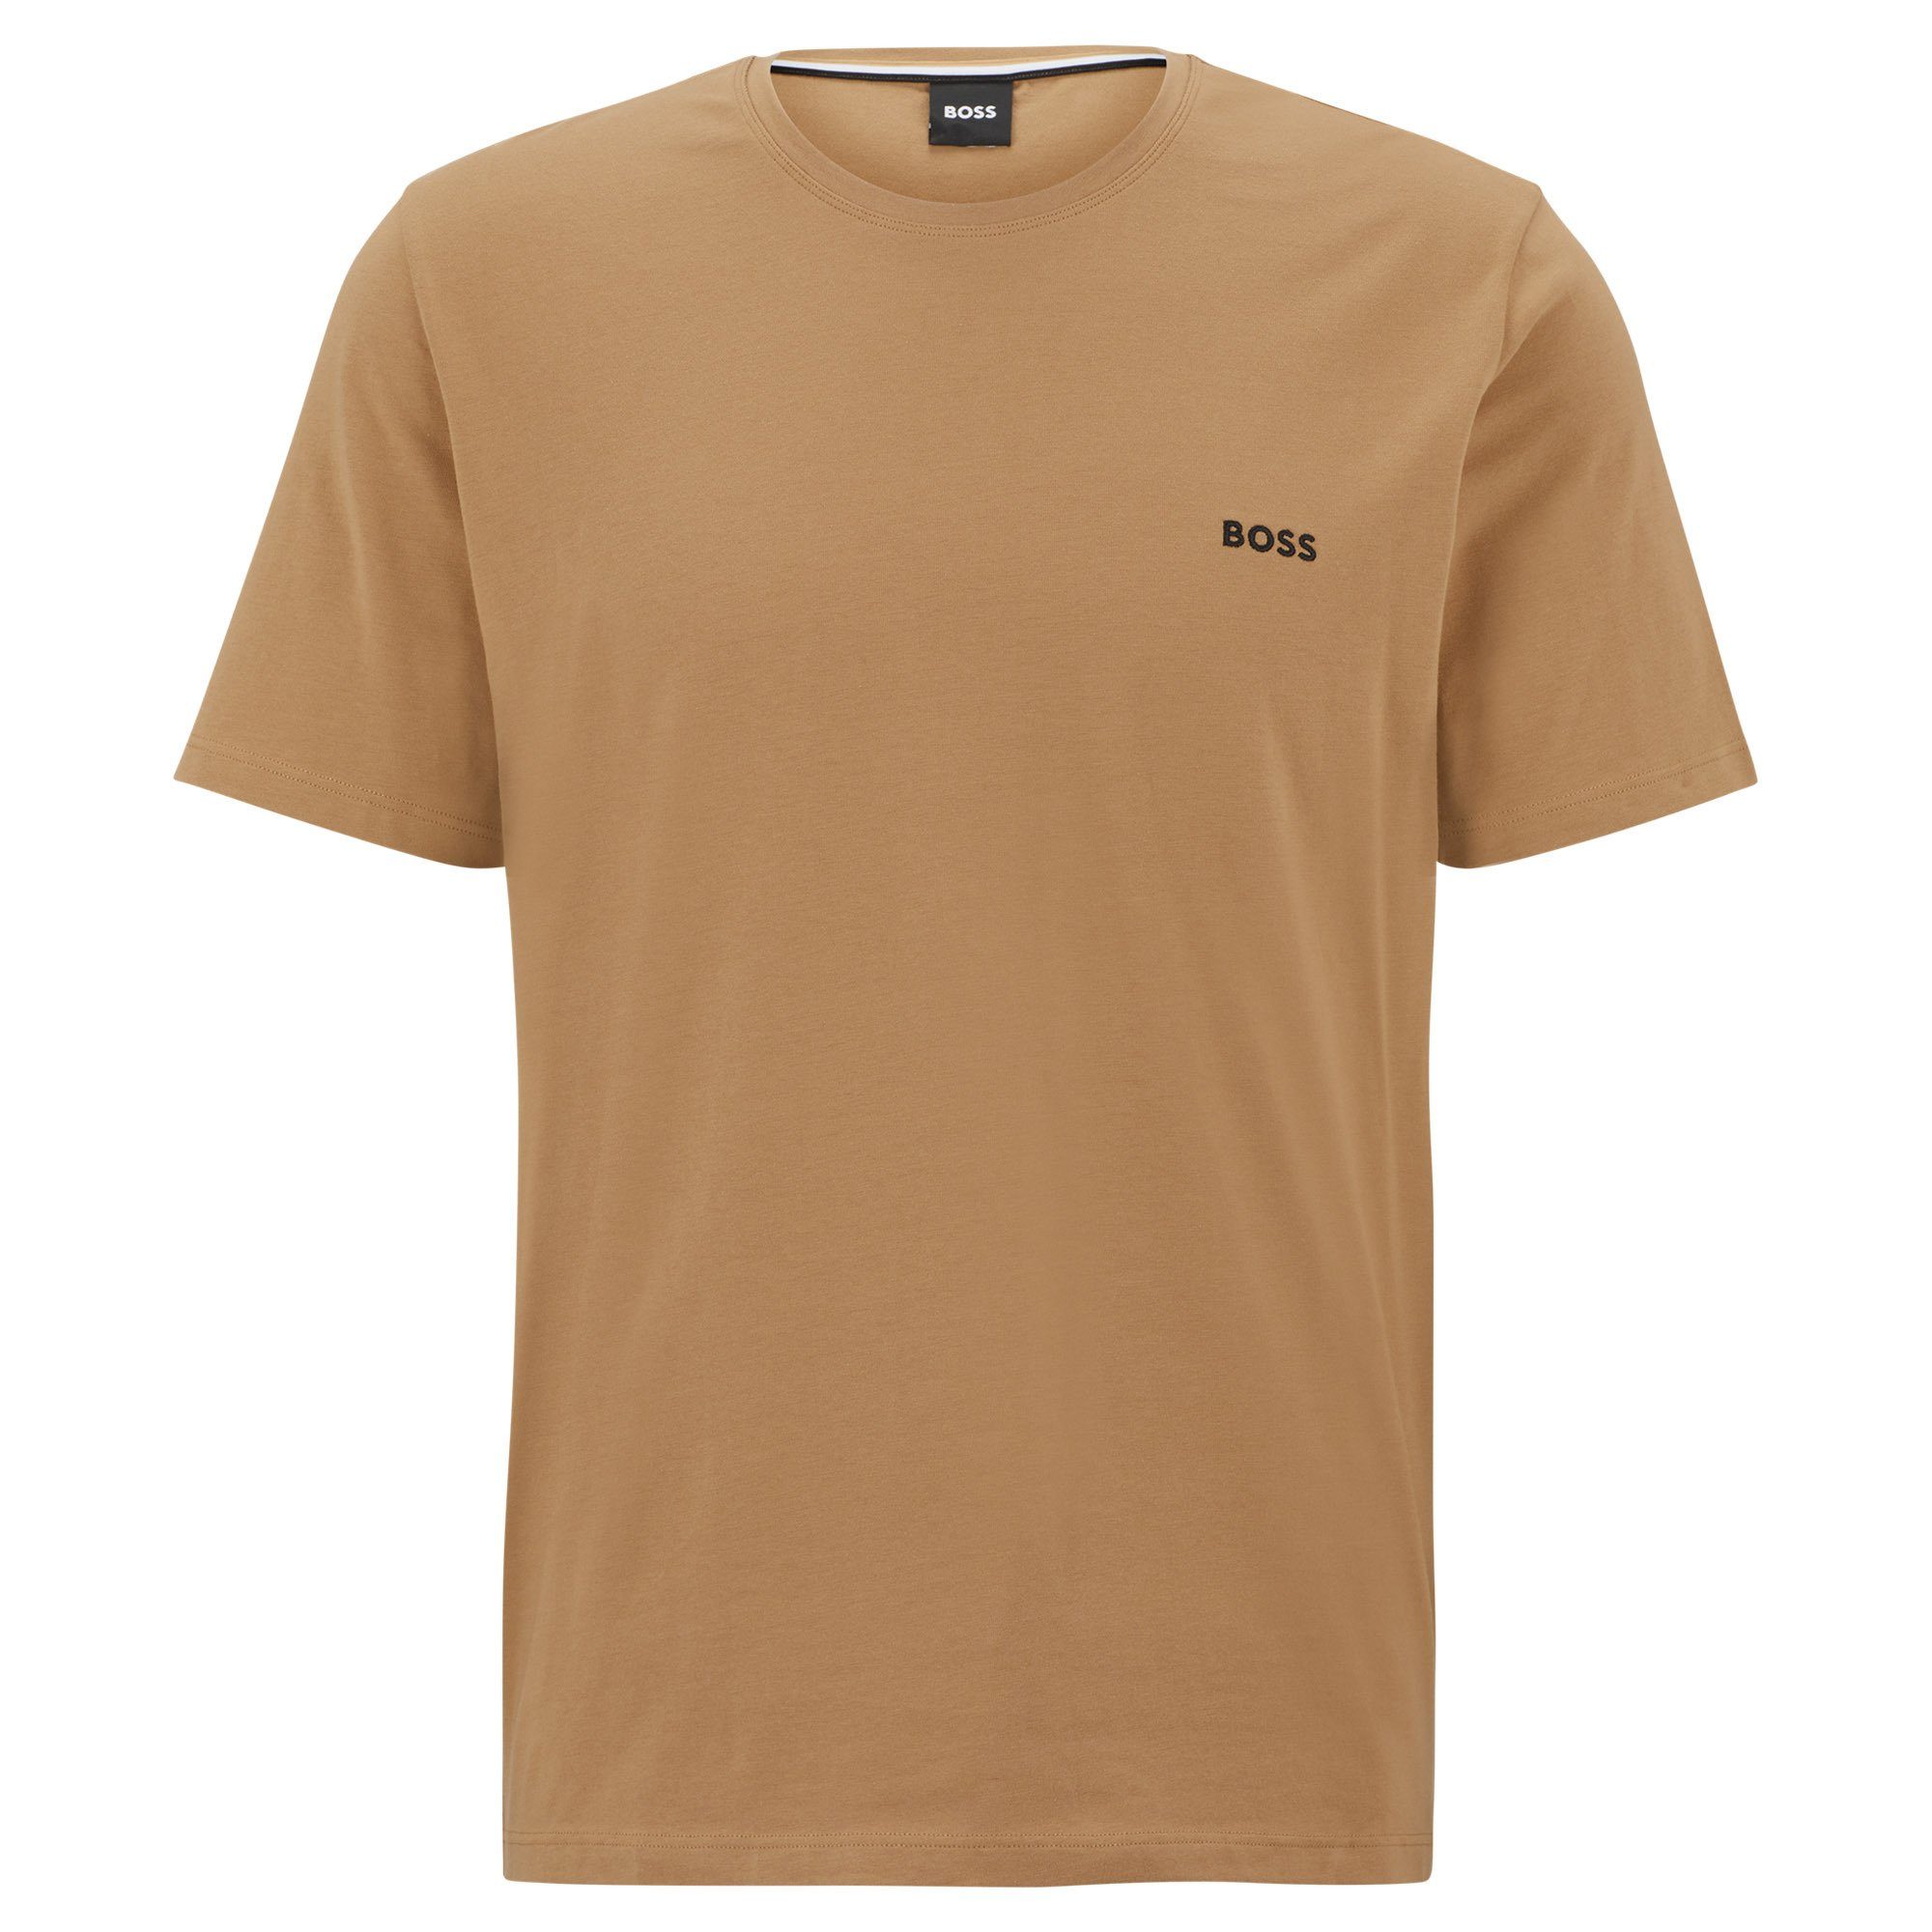 Mix Herren T-Shirt T-Shirt & Beige) Baumwolle Match, Rundhals, Beige - BOSS (Medium